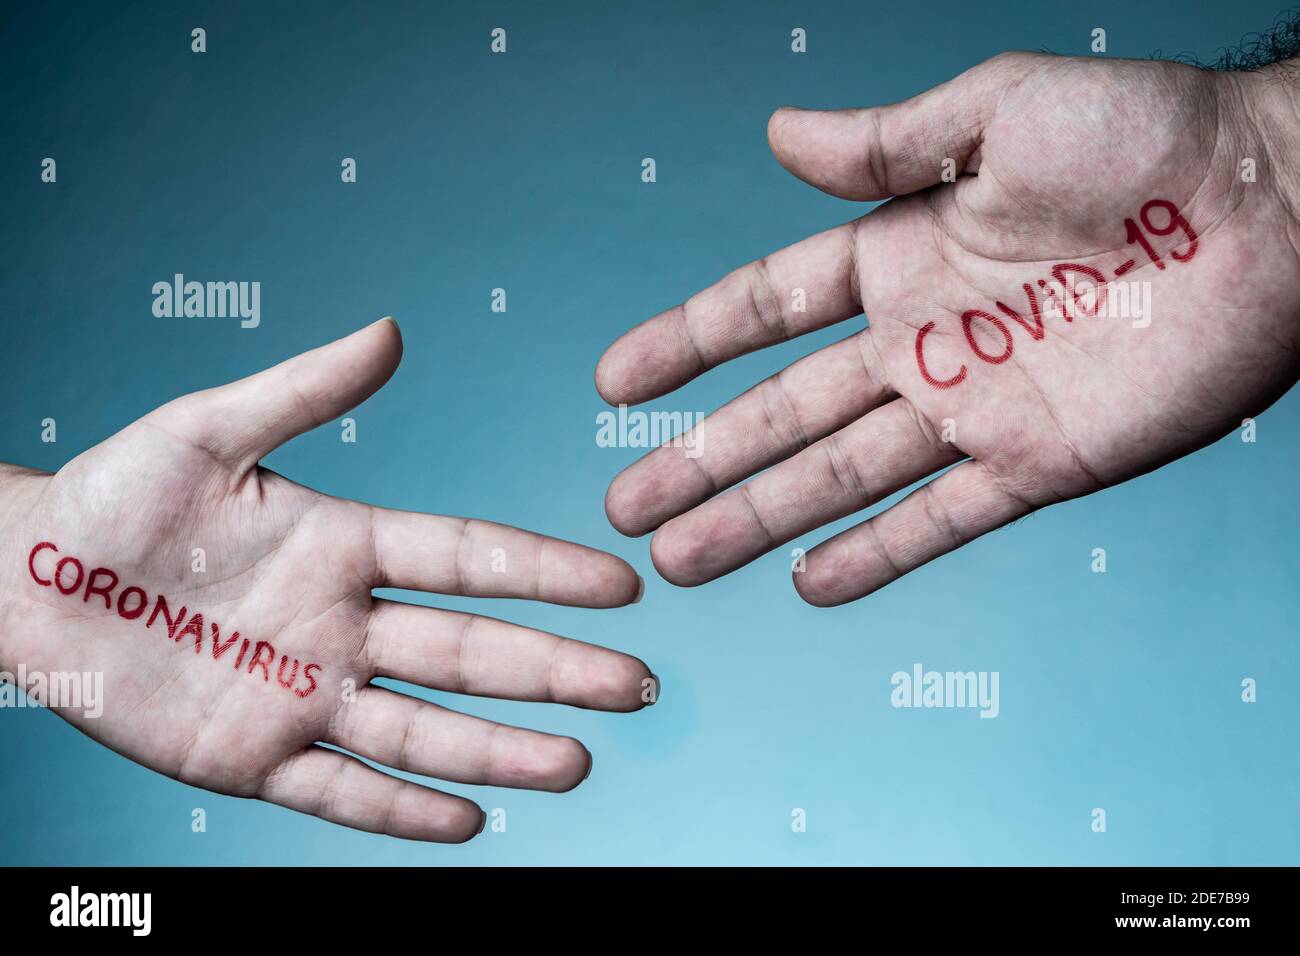 Covid-19 e il concetto di coronavirus. Limitare i handshake per contenere l'infezione da Coronavirus COVID-19. Nessuna stretta di mano Foto Stock